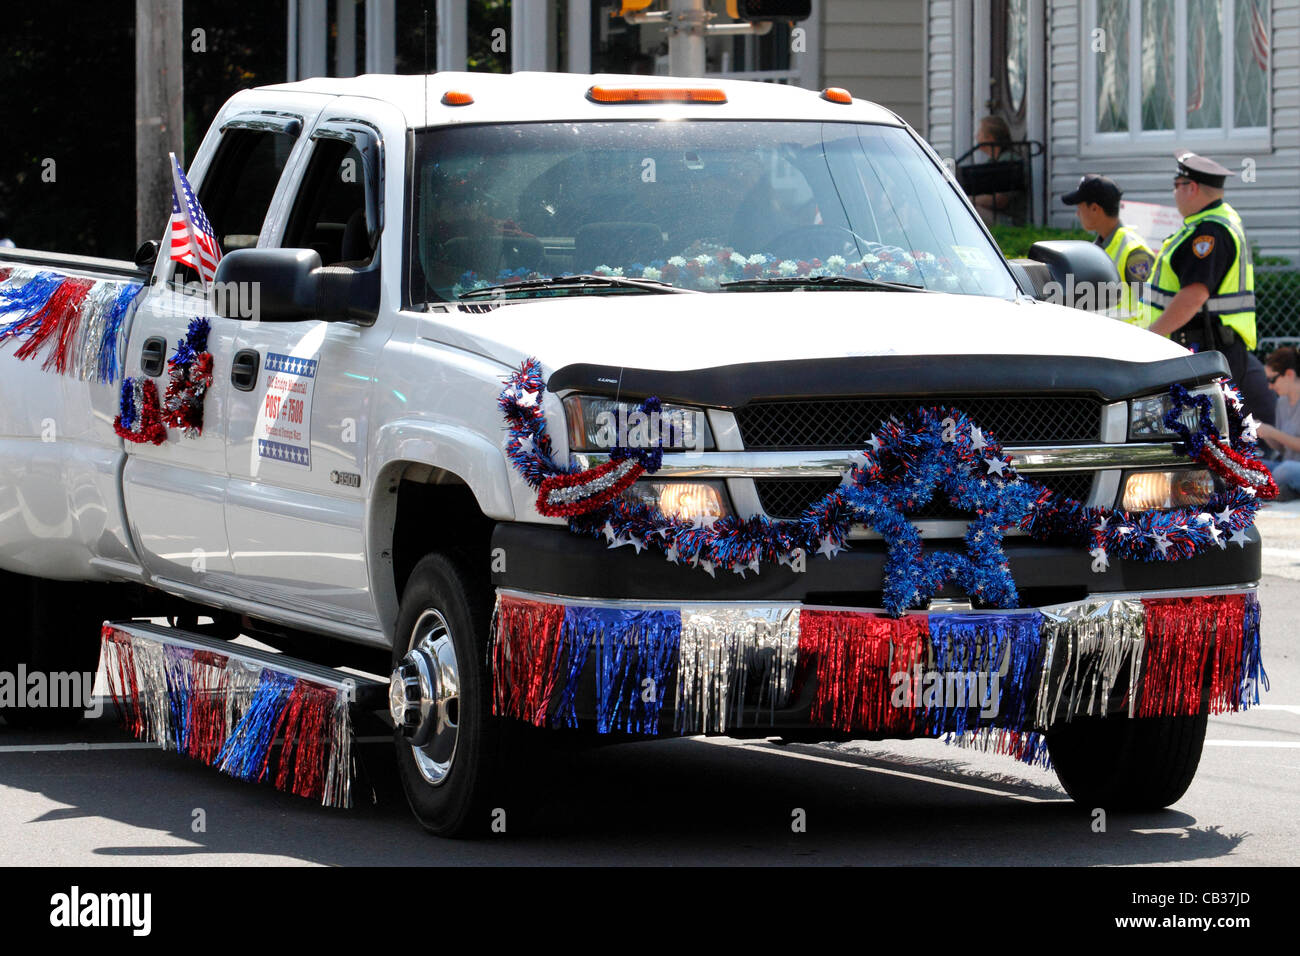 Décoré d'une camionnette en rouge, blanc et bleu représentant les anciens combattants des guerres étrangères dans un mémorial Day Parade. Banque D'Images